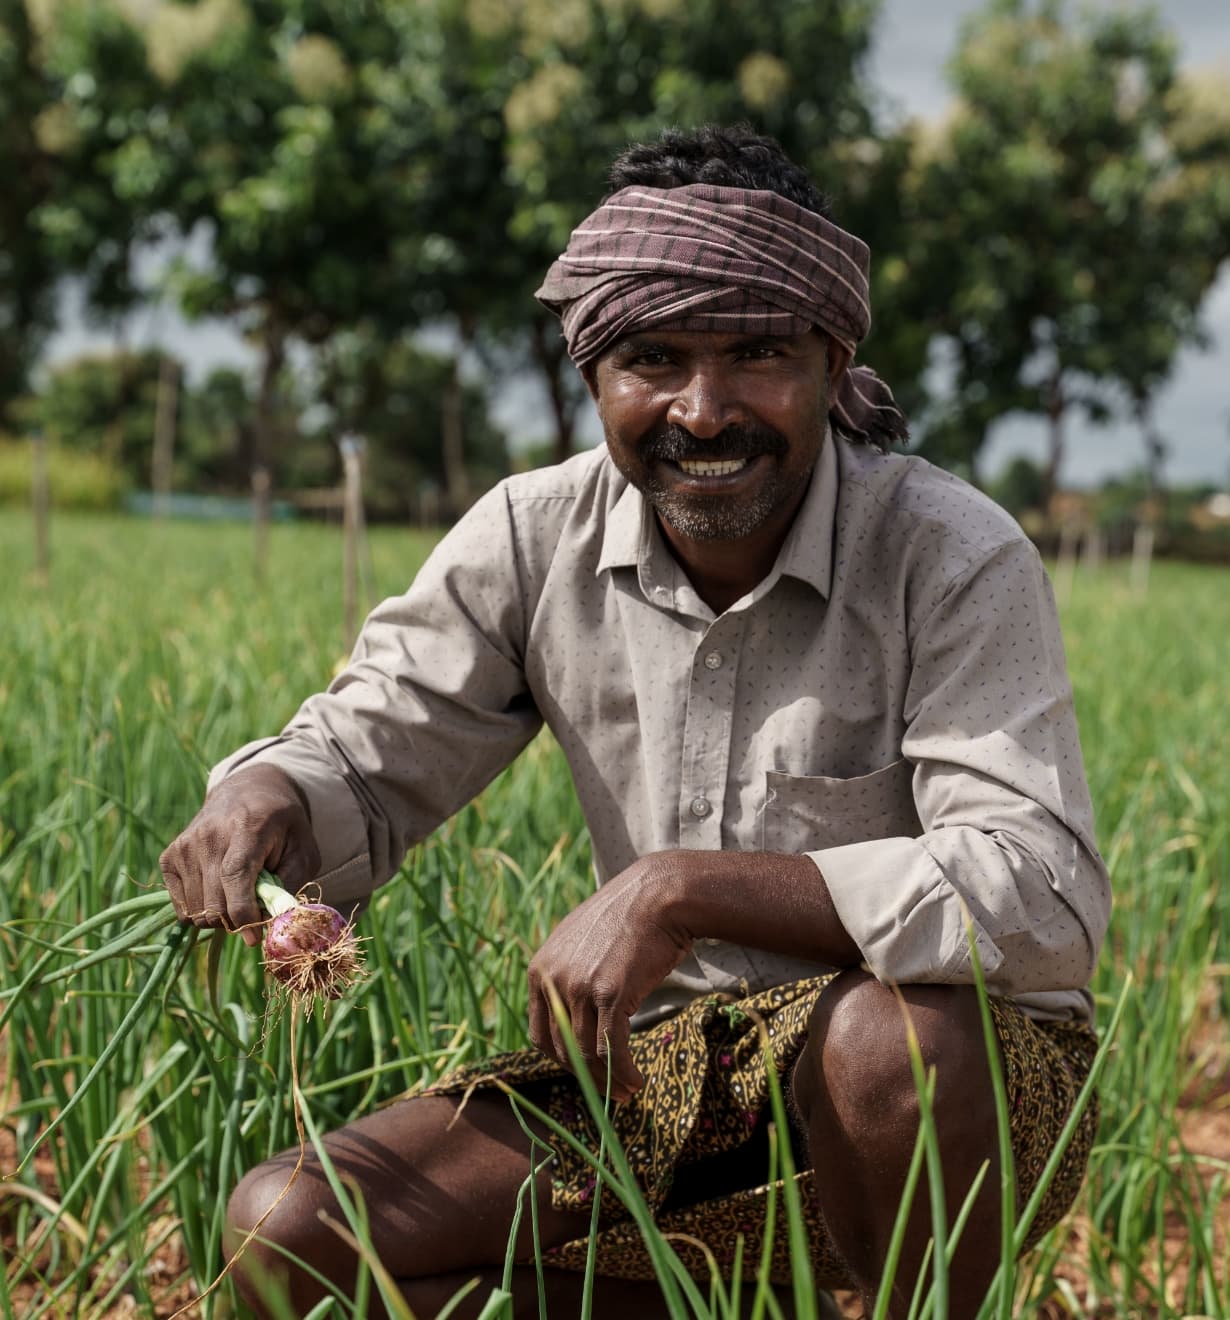 Le programme de développement communautaire en Inde a entre autres permis à 250 agriculteurs d’acquérir de nouvelles compétences et connaissances en agriculture biologique et élevage du bétail. Photo publiée avec l’aimable autorisation de Climate Investor One.